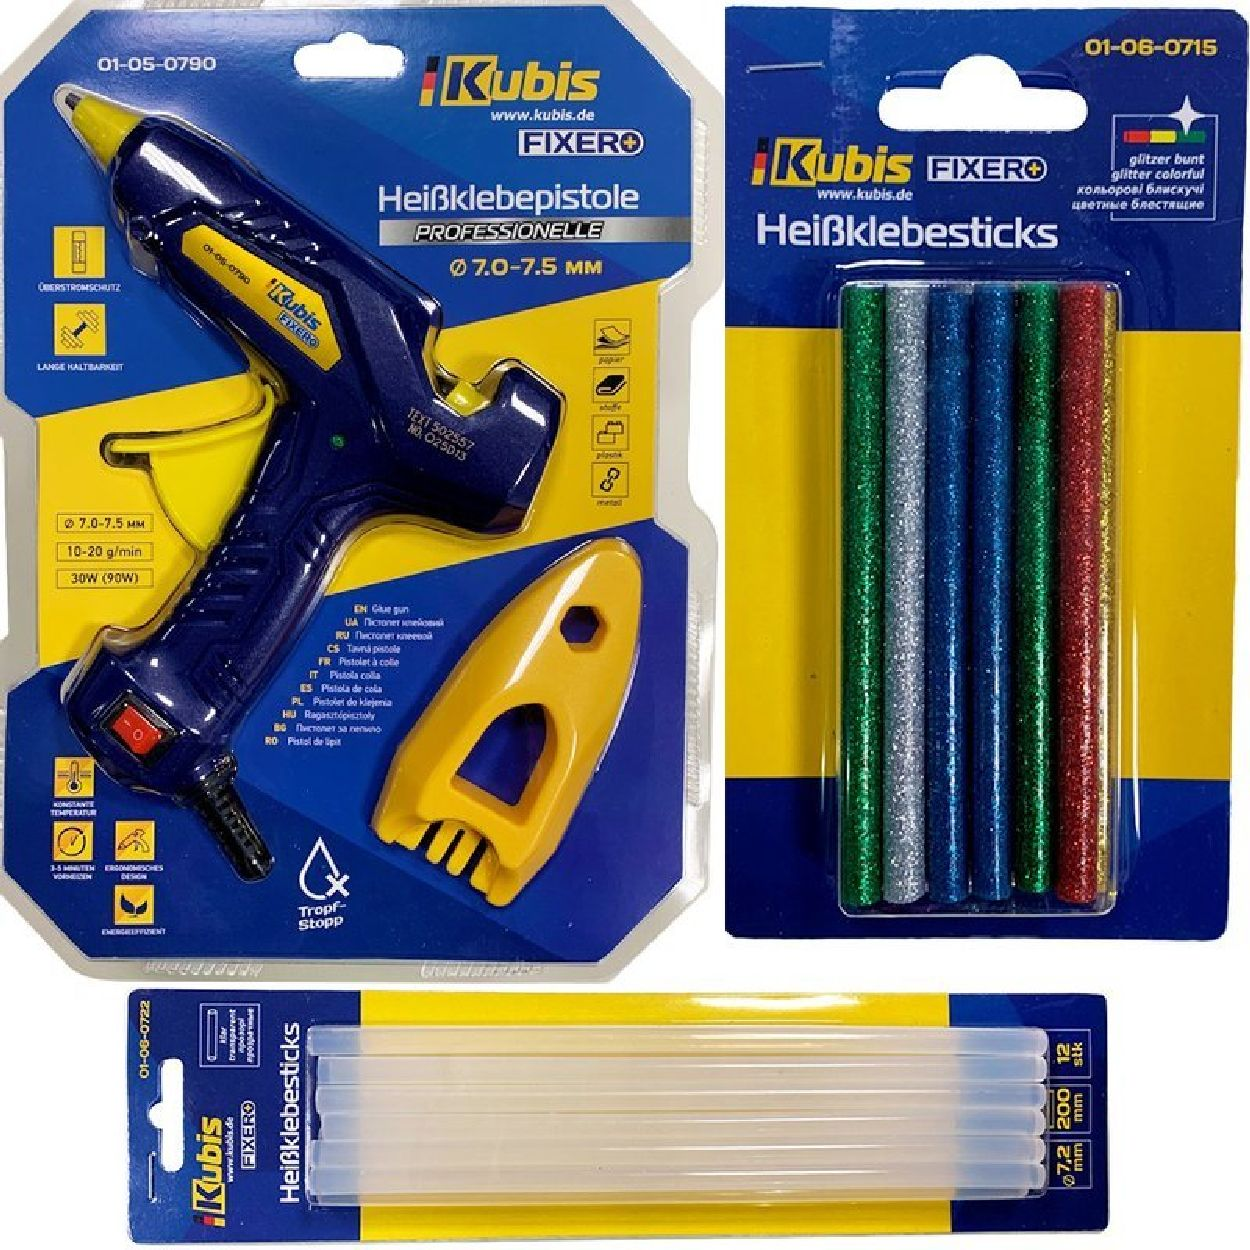 KB01-05-0790 Multifunktionswerkzeug, KUBIS INBUSCO 2x-gelb,blau,gruen,rot,braun KlebepistoleSET / -V1-Set